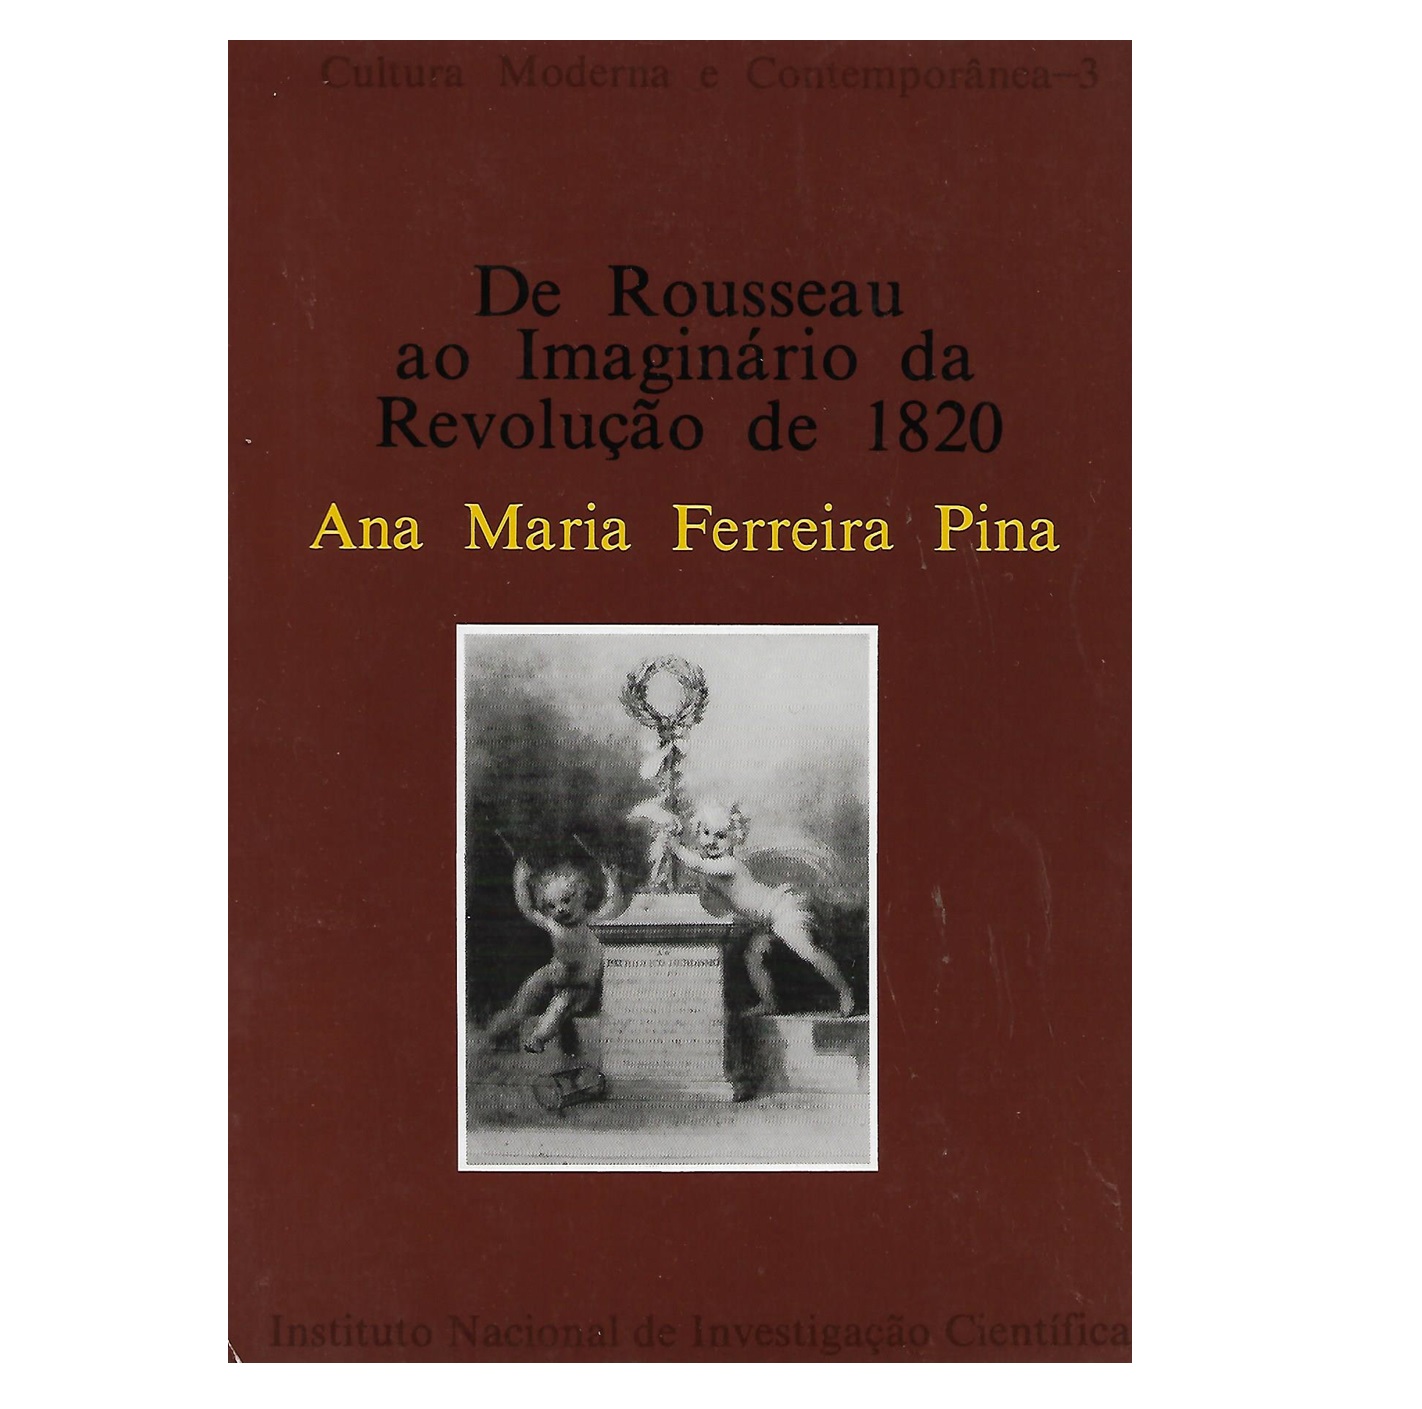 De Rousseau ao Imaginário de Revolução de 1820.